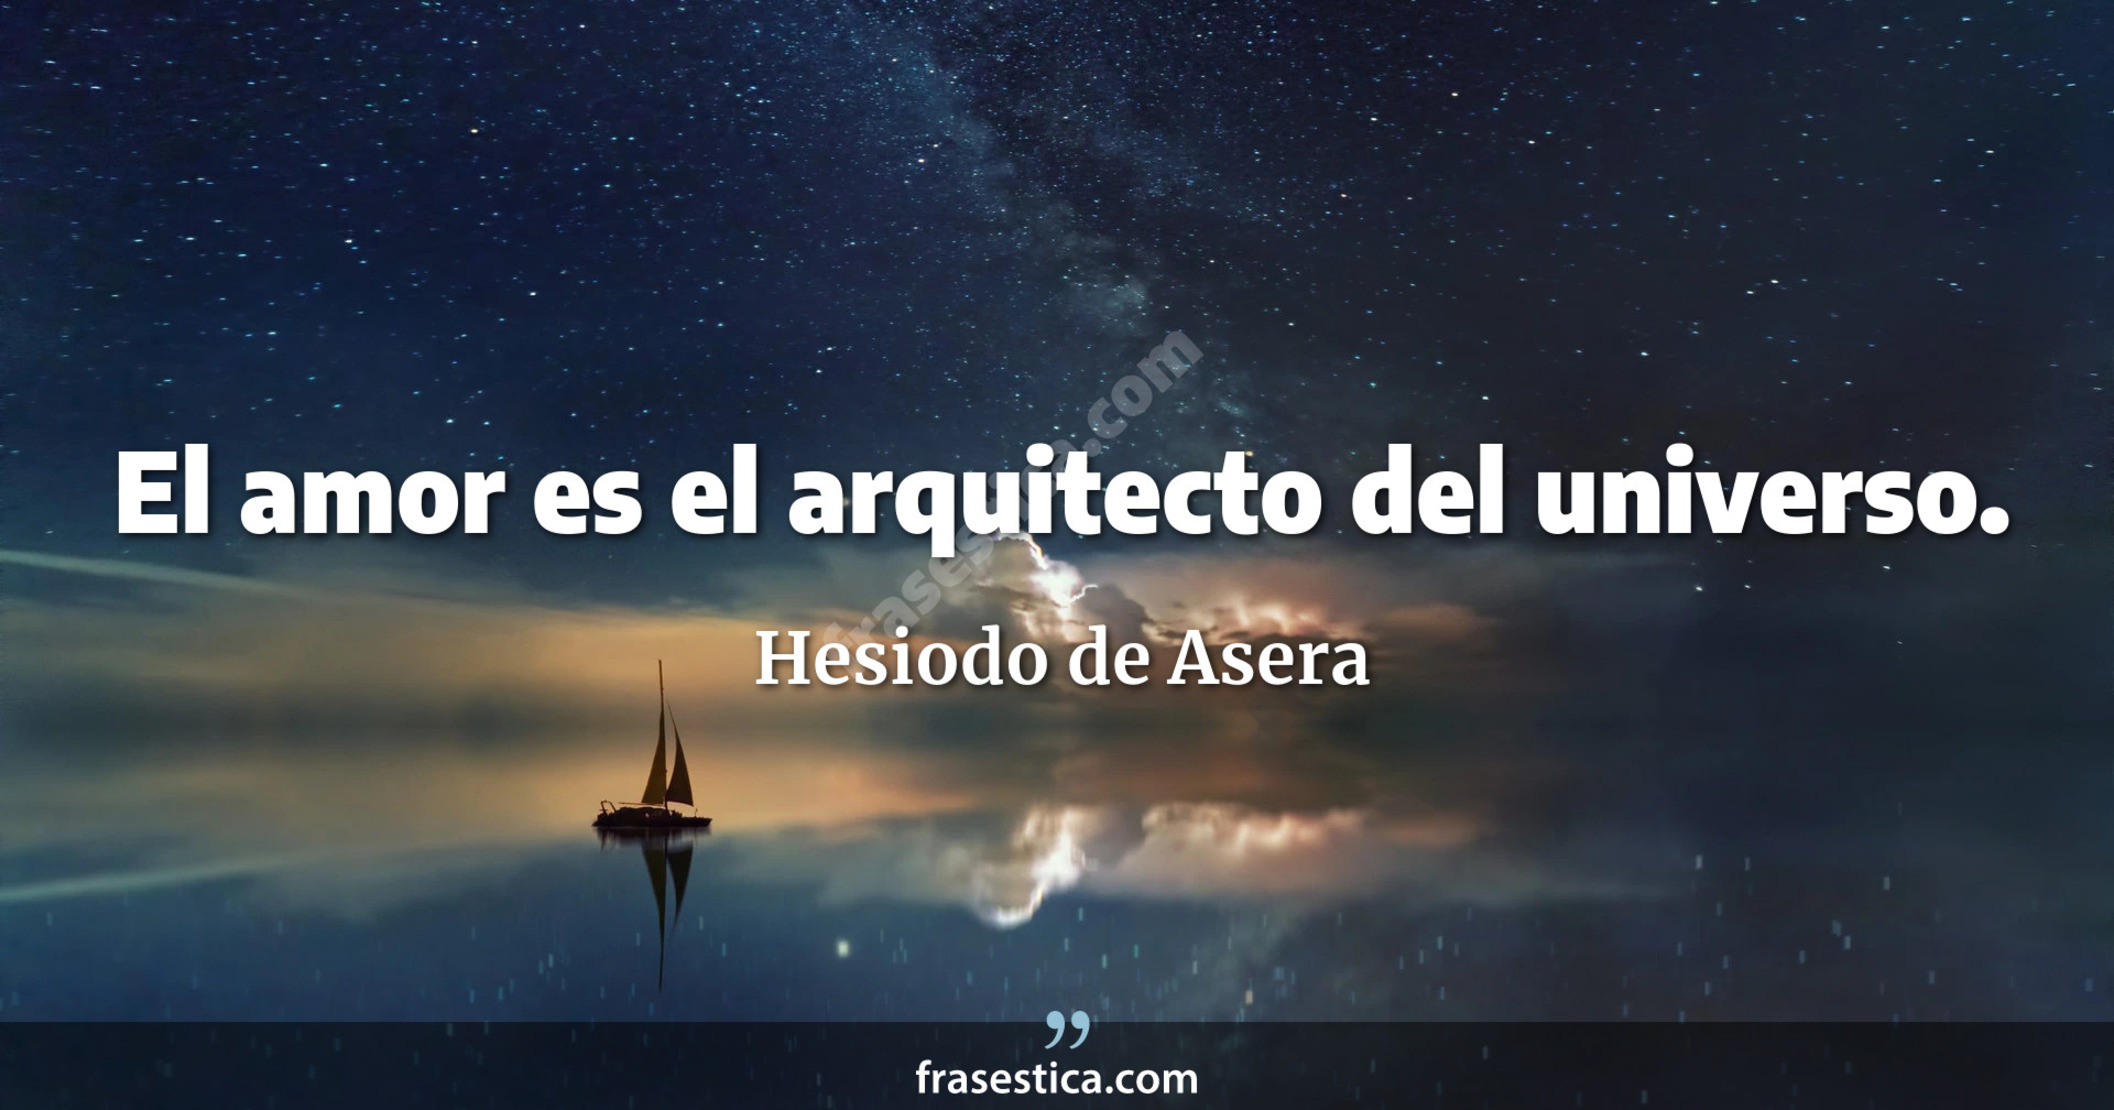 El amor es el arquitecto del universo. - Hesiodo de Asera